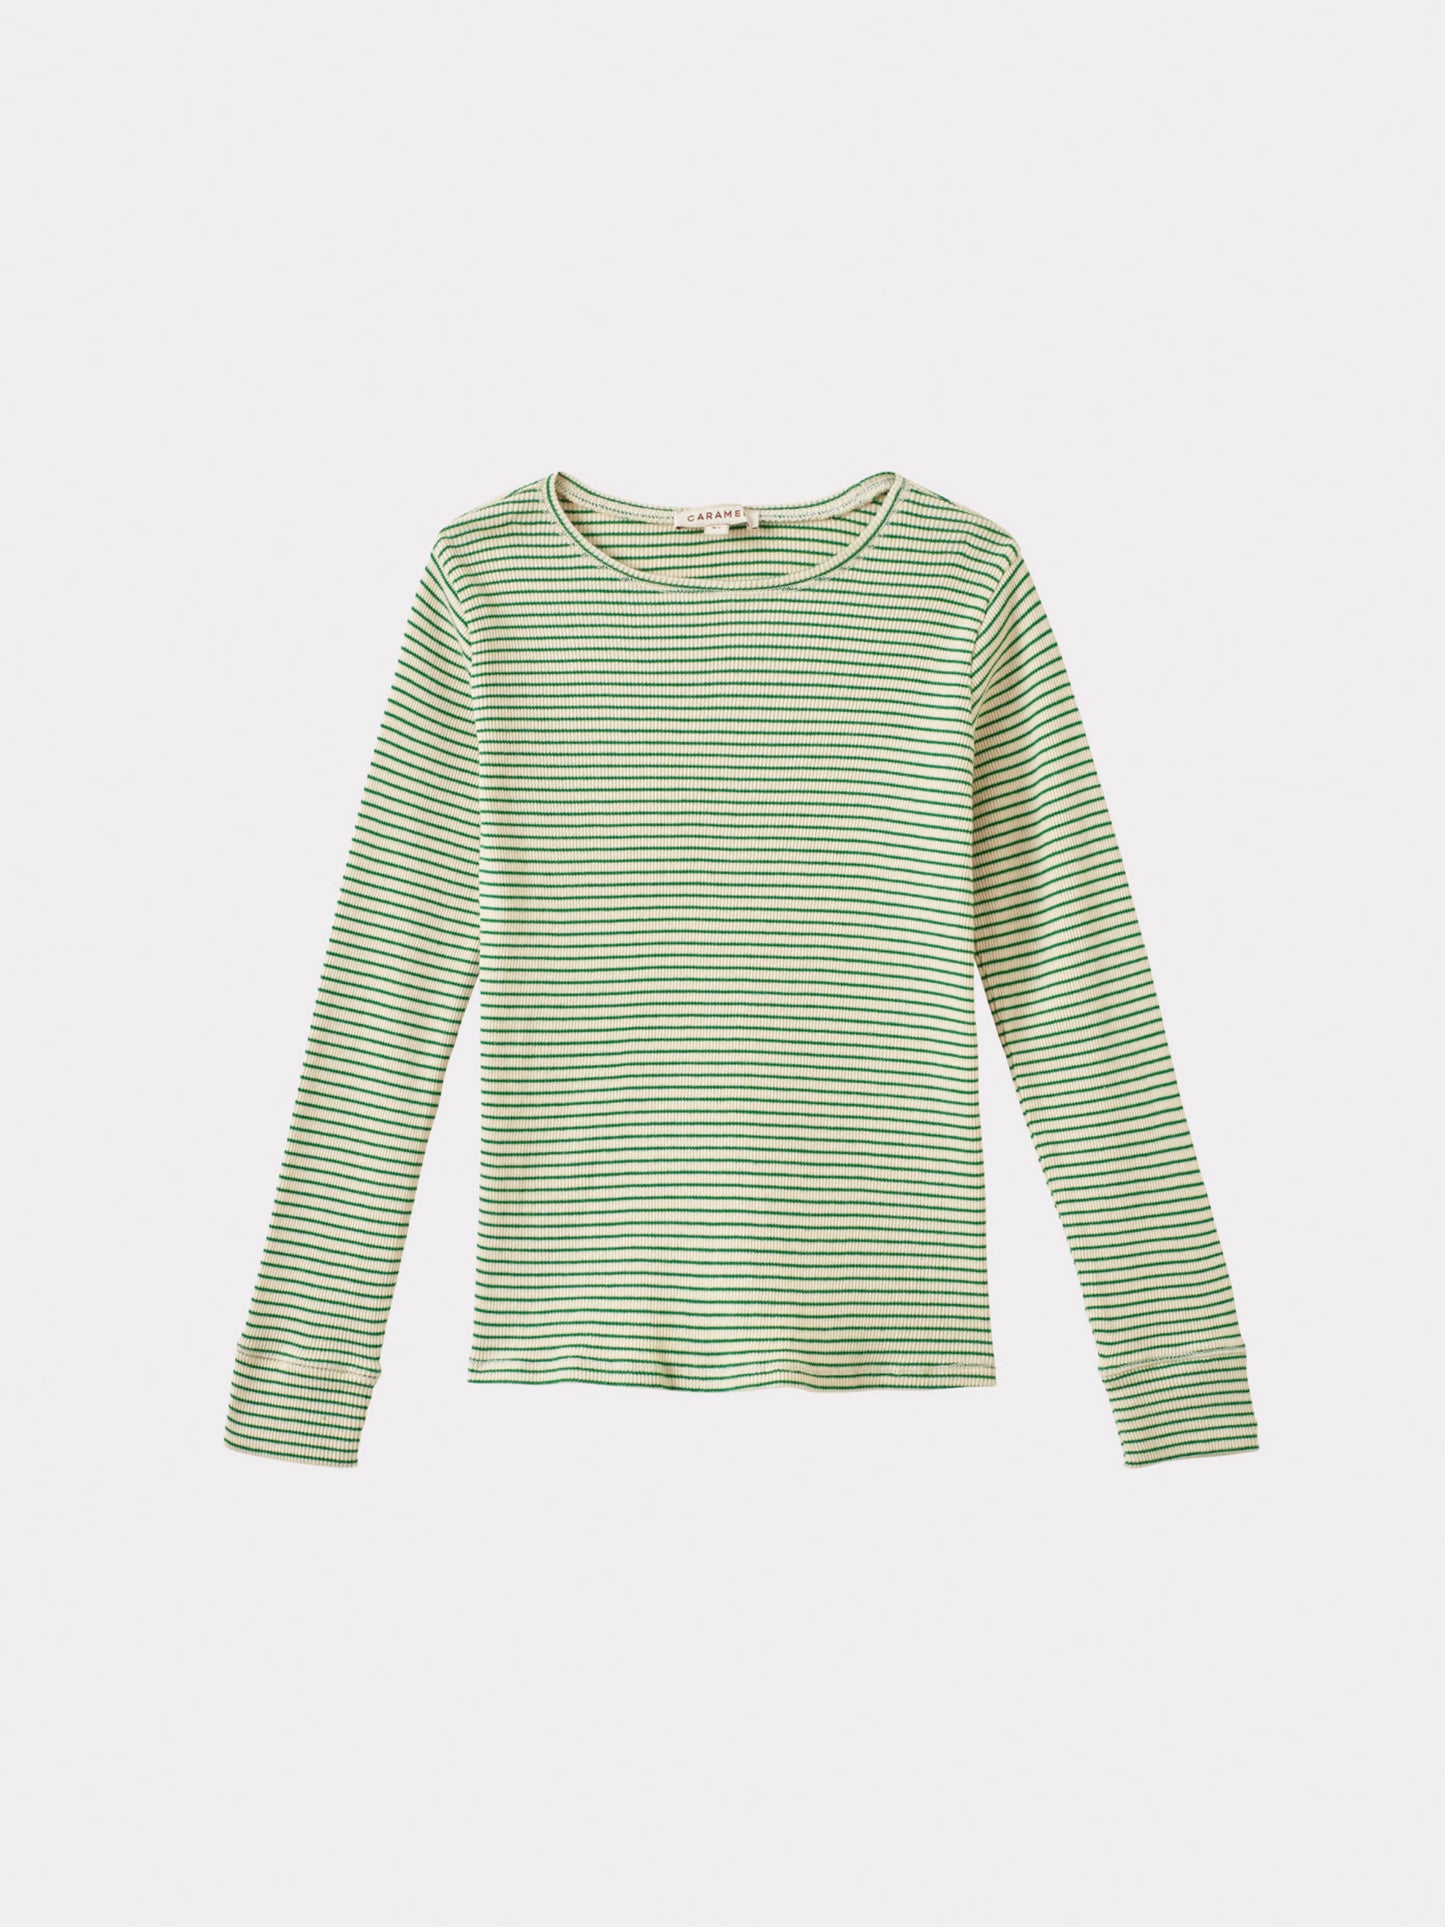 Caramel - Kishon T-shirt - Emerald green/cream